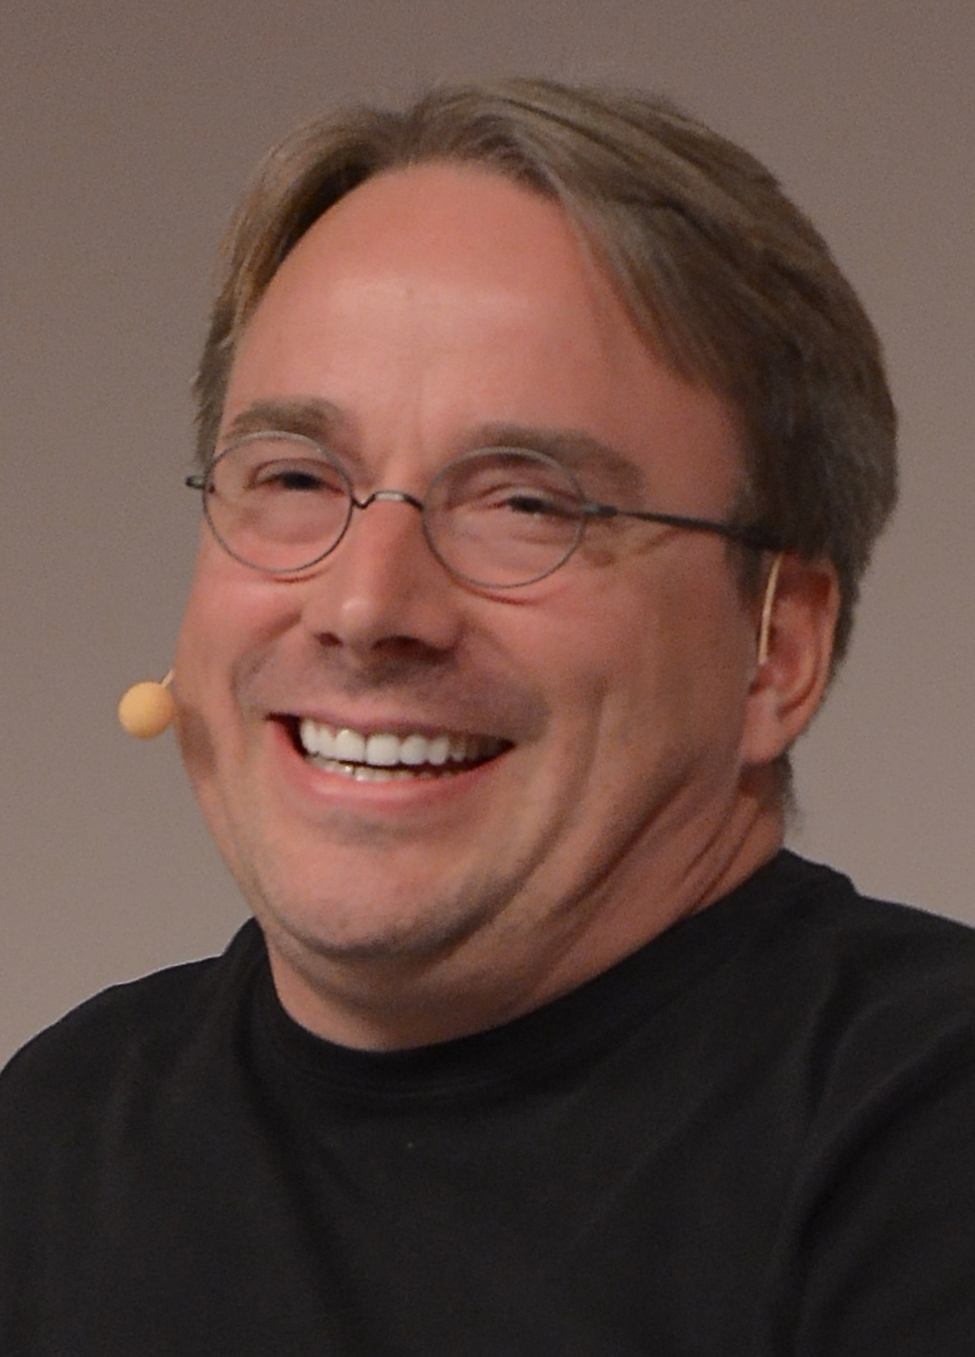 auteur Linus Torvalds de la citation Bien que je ne puisse pas obtenir d'argent de Linux, j'obtiens une énorme satisfaction personnelle d'avoir écrit quelque chose que les gens aiment vraiment utiliser, et que les gens trouvent être la meilleure alternative pour leurs besoins.